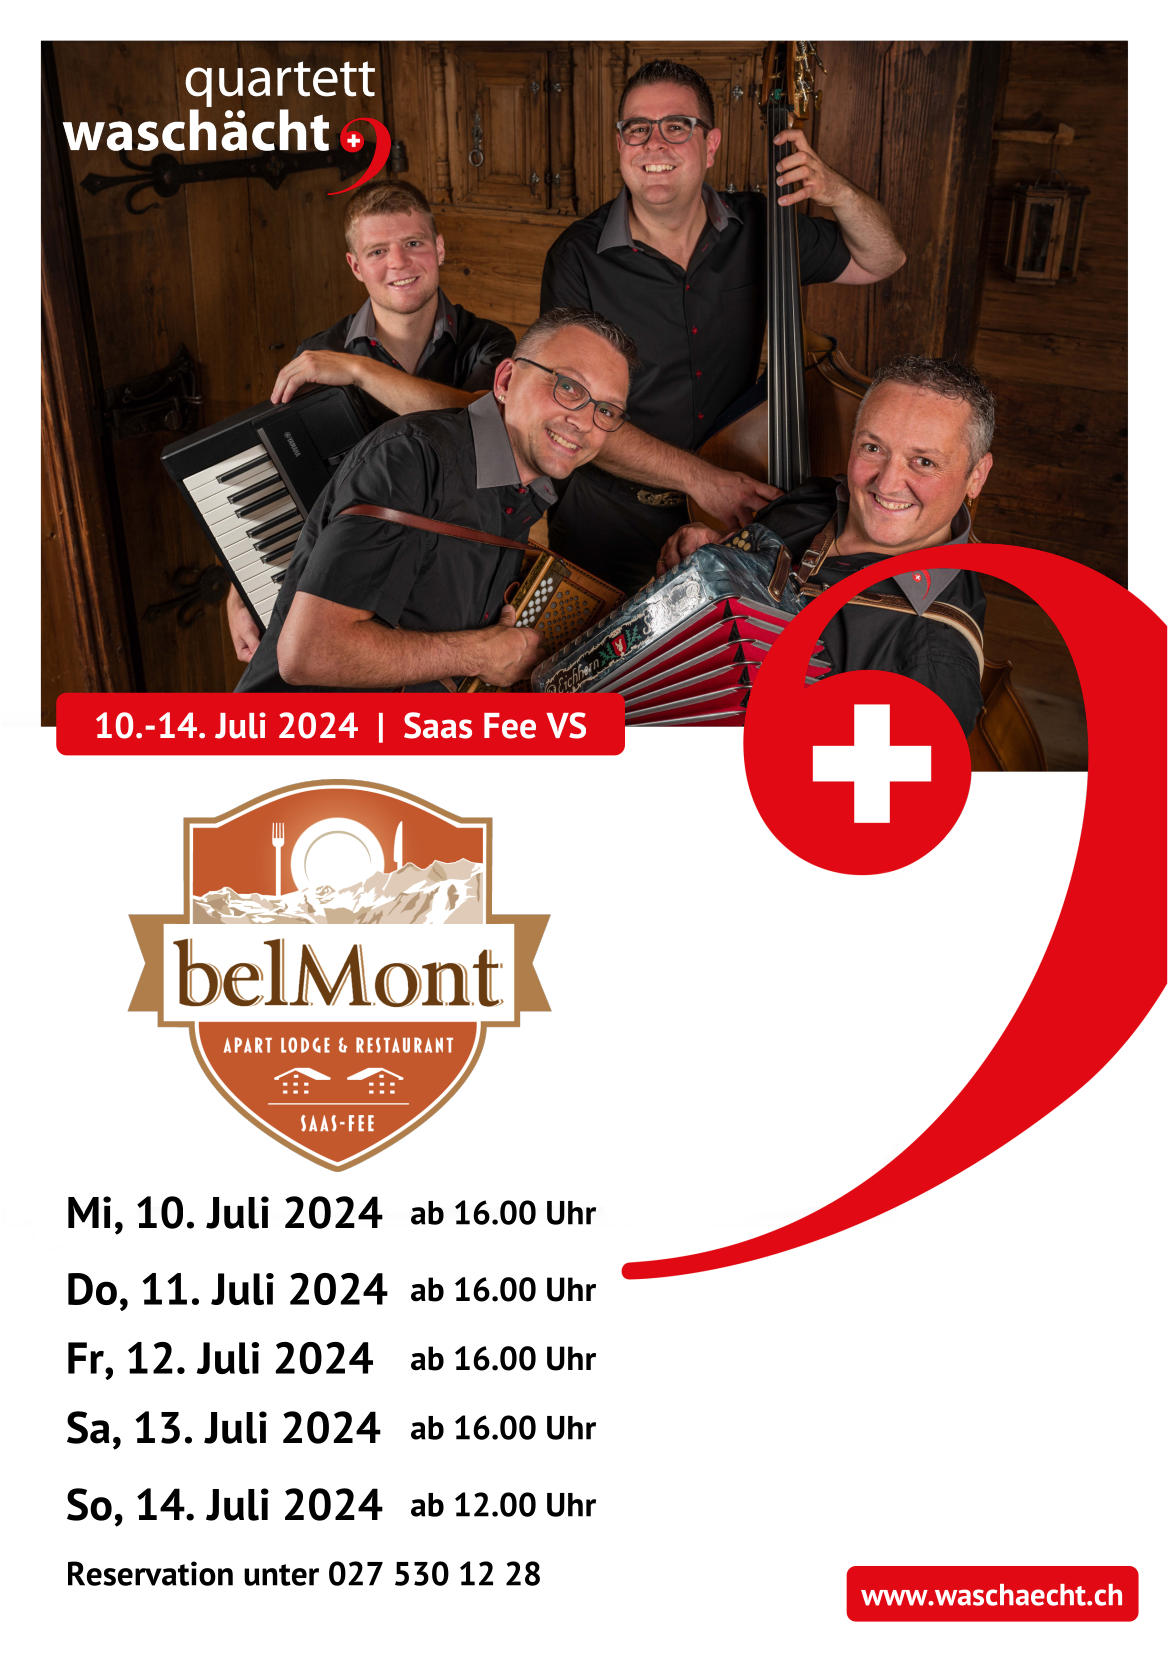 belmont apart hotel restaurant saas fee quartett waschaecht